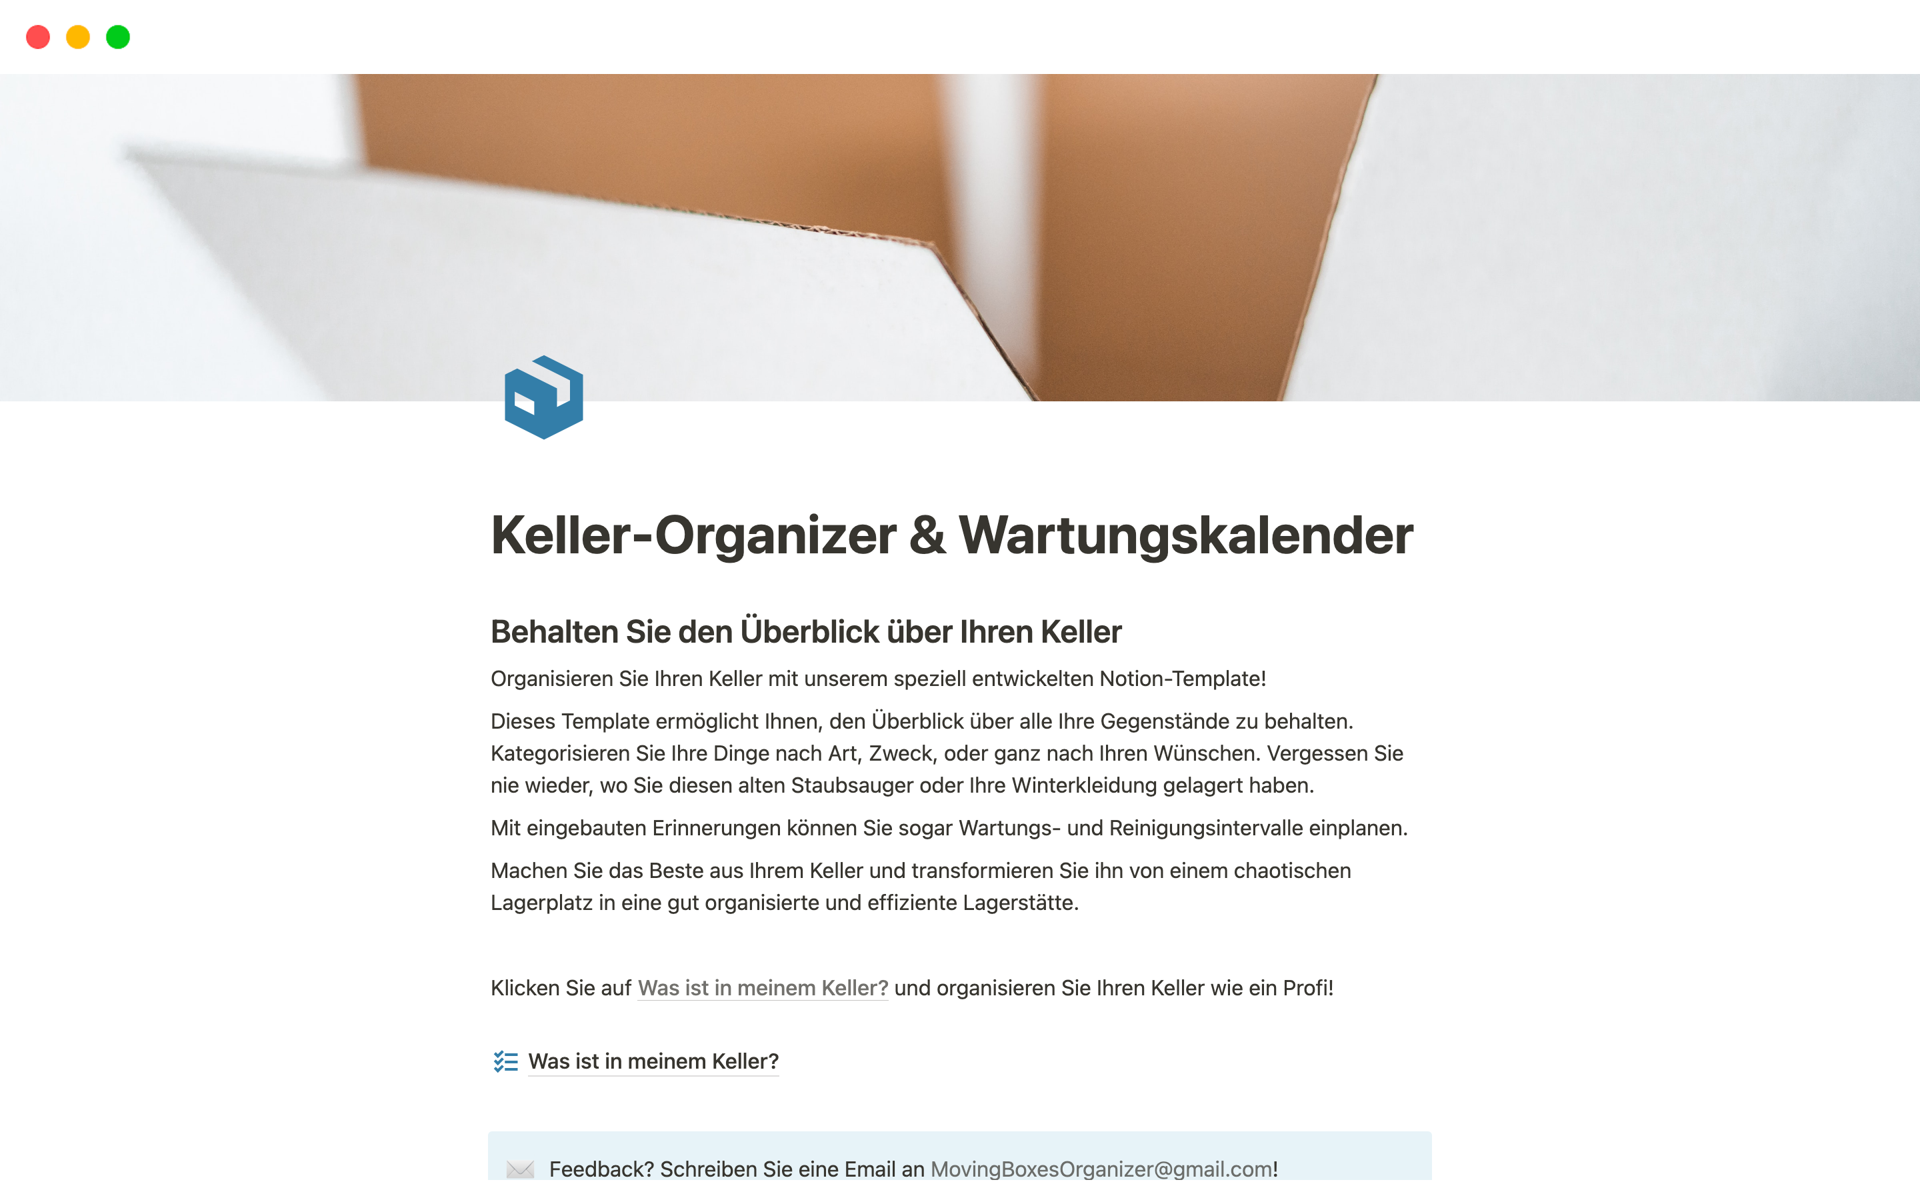 Uma prévia do modelo para Keller-Organizer & Wartungskalender